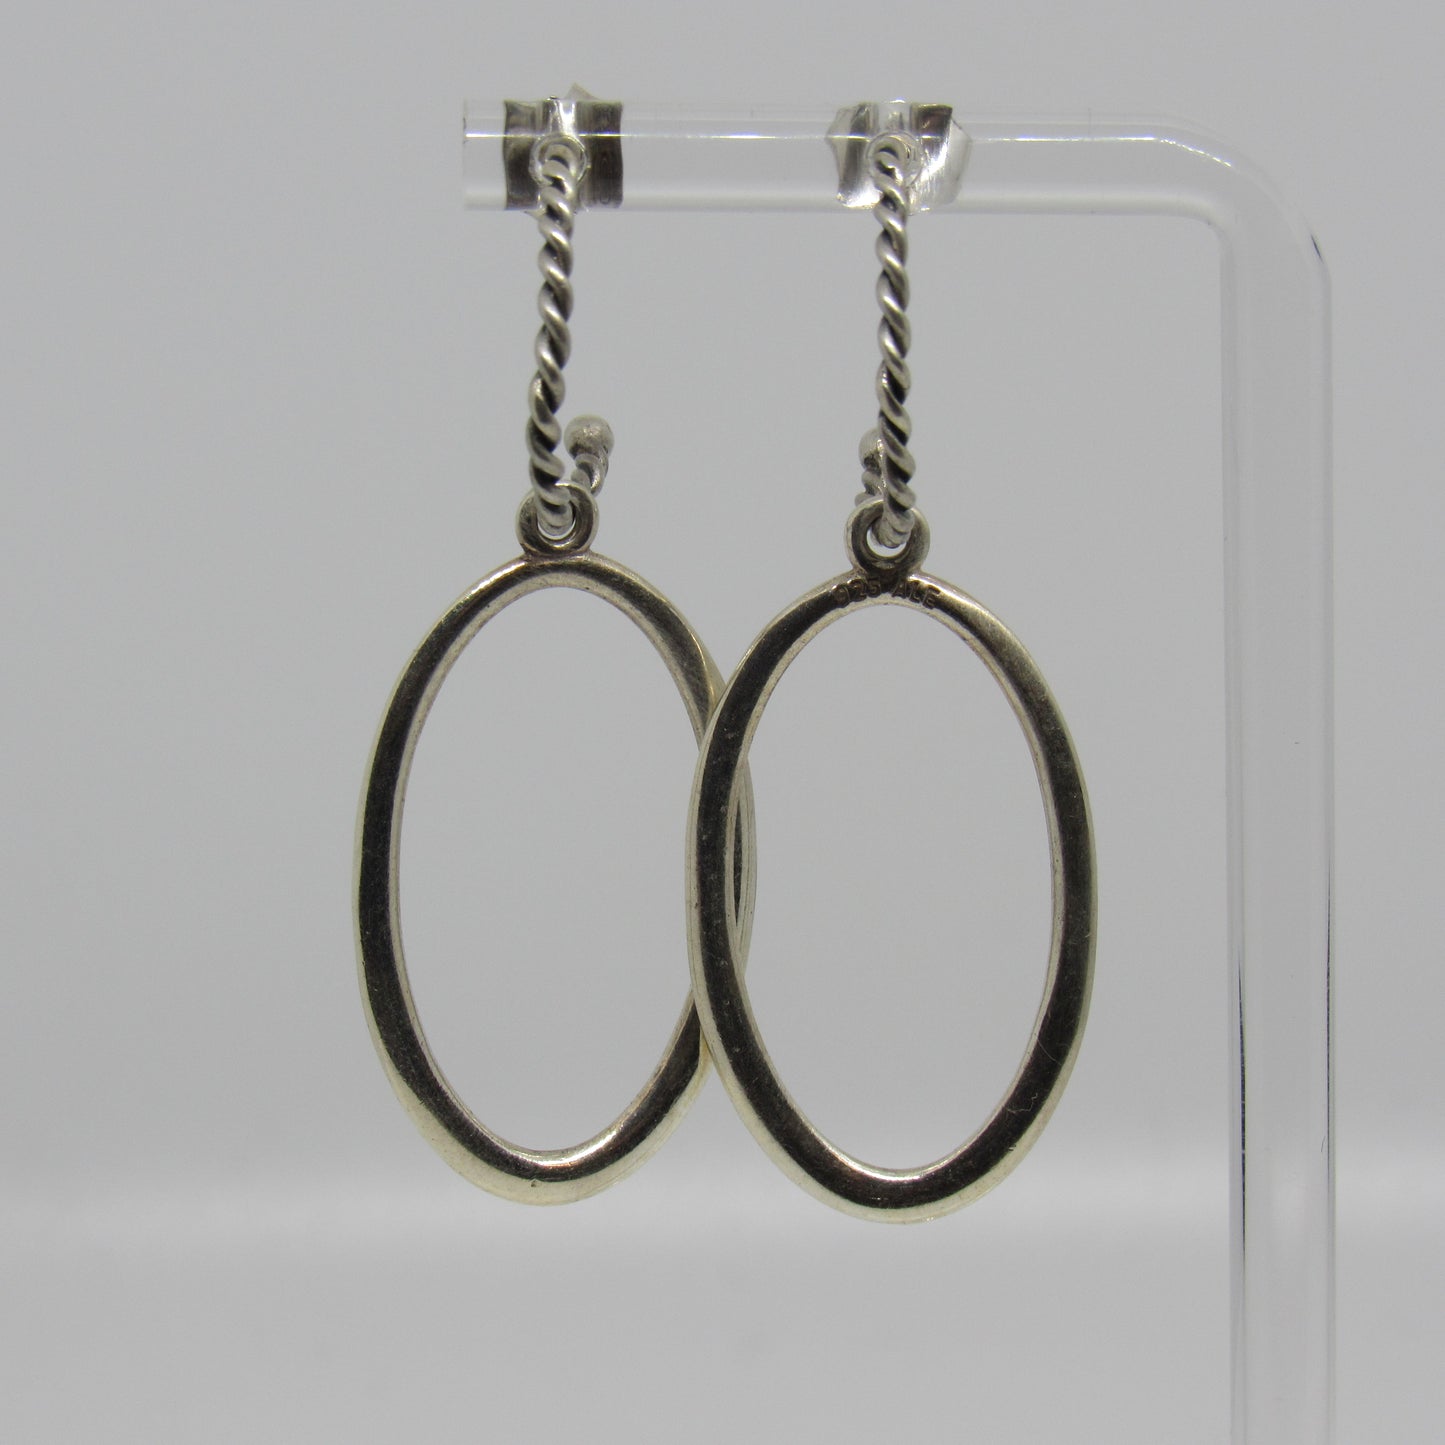 Pandora Sterling Silver Hoop Earrings w/ Dangle Drop Large Oval